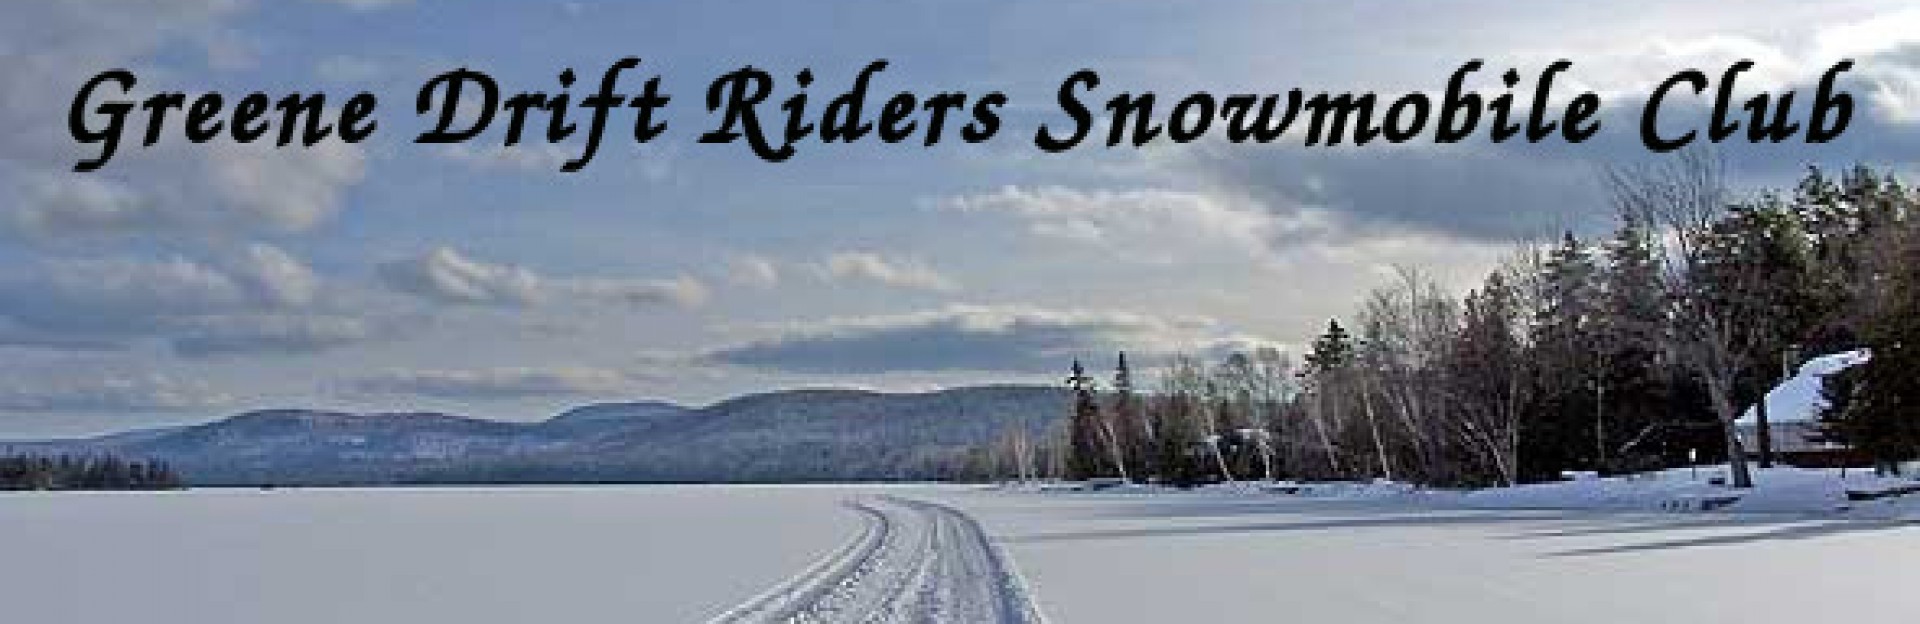 Greene Drift Riders Snowmobile Club